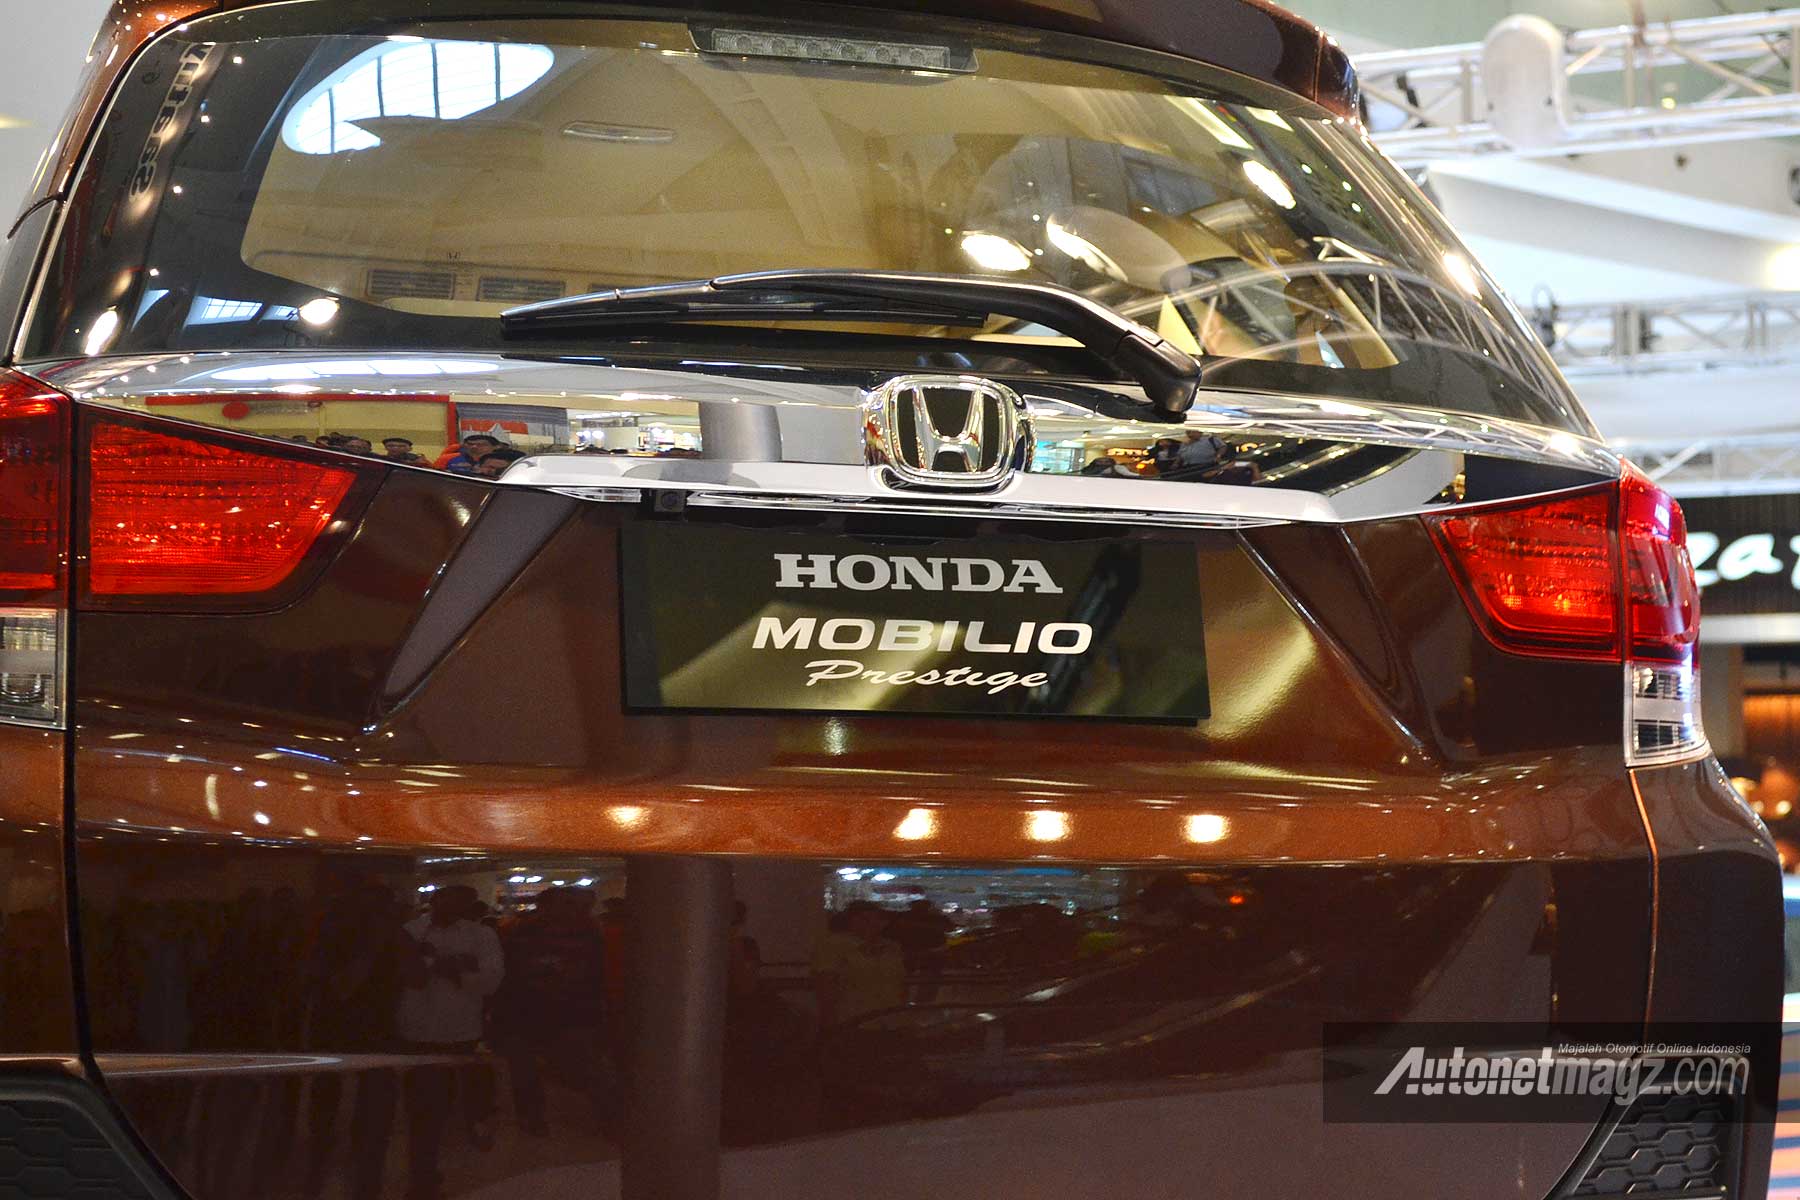 Honda Mobilio Prestige garnis krom belakang